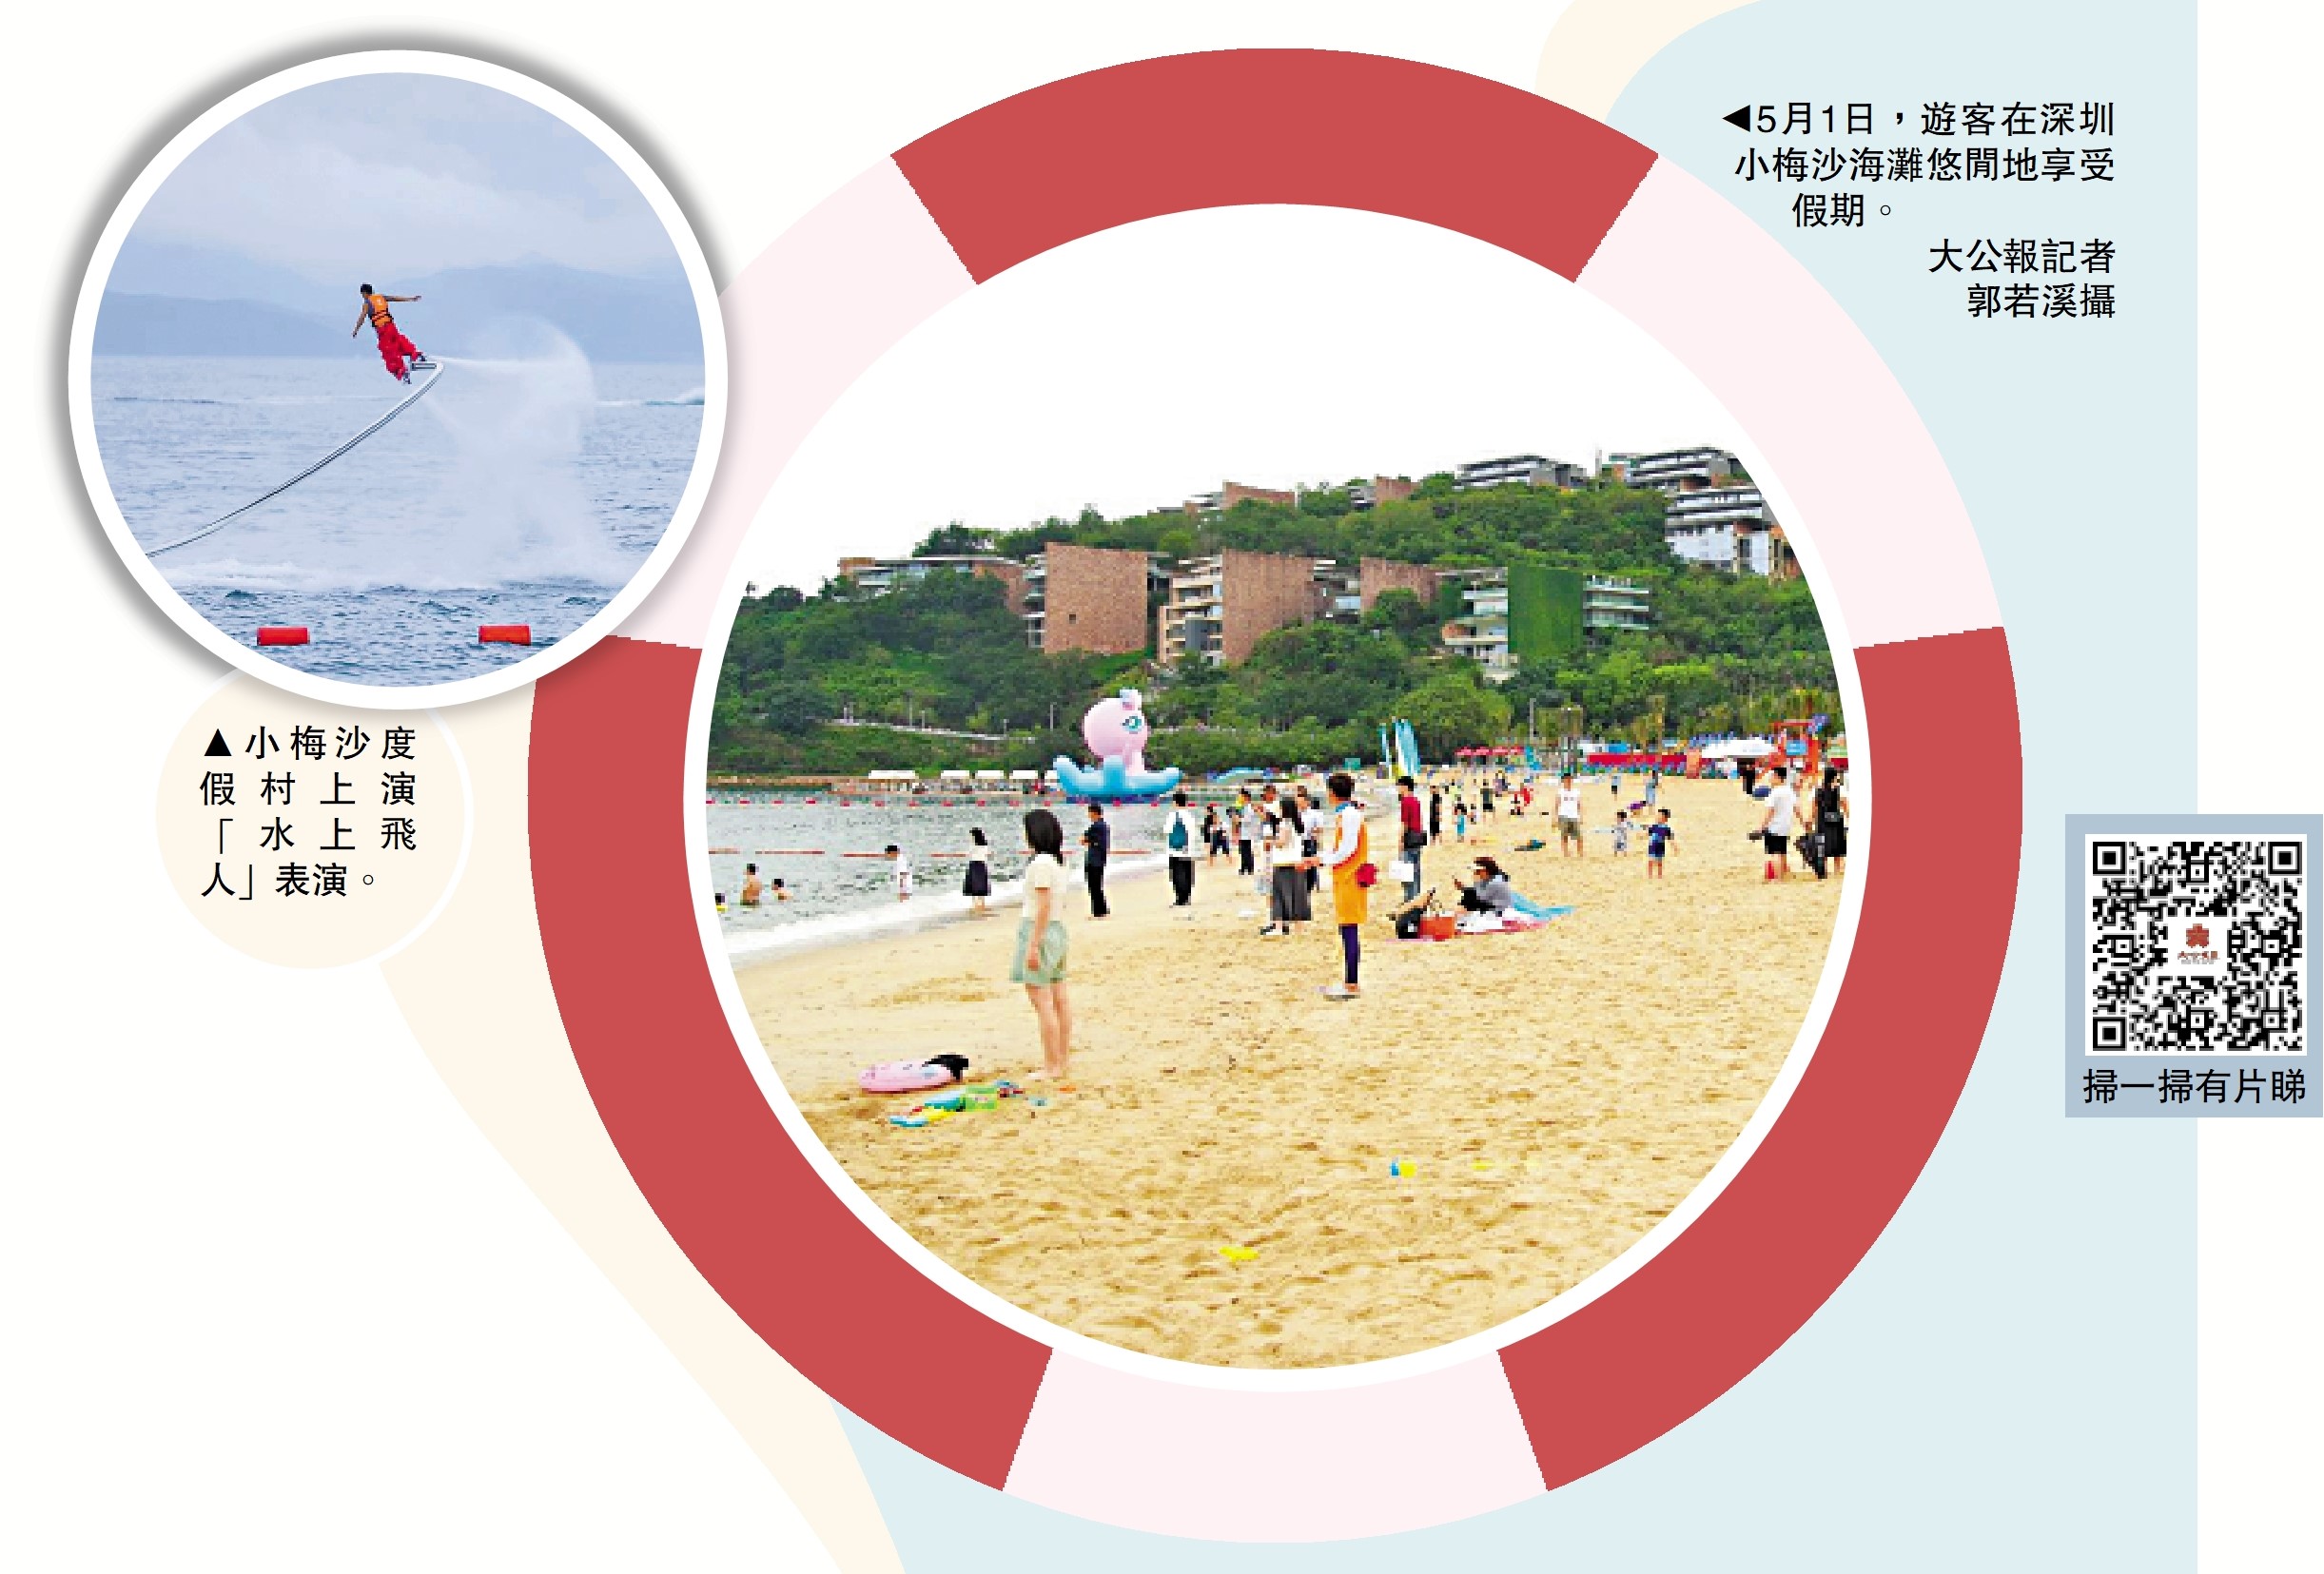 　　左圖：小梅沙度假村上演「水上飛人」表演。右圖：5月1日，遊客在深圳小梅沙海灘悠閒地享受假期。\大公報記者郭若溪攝